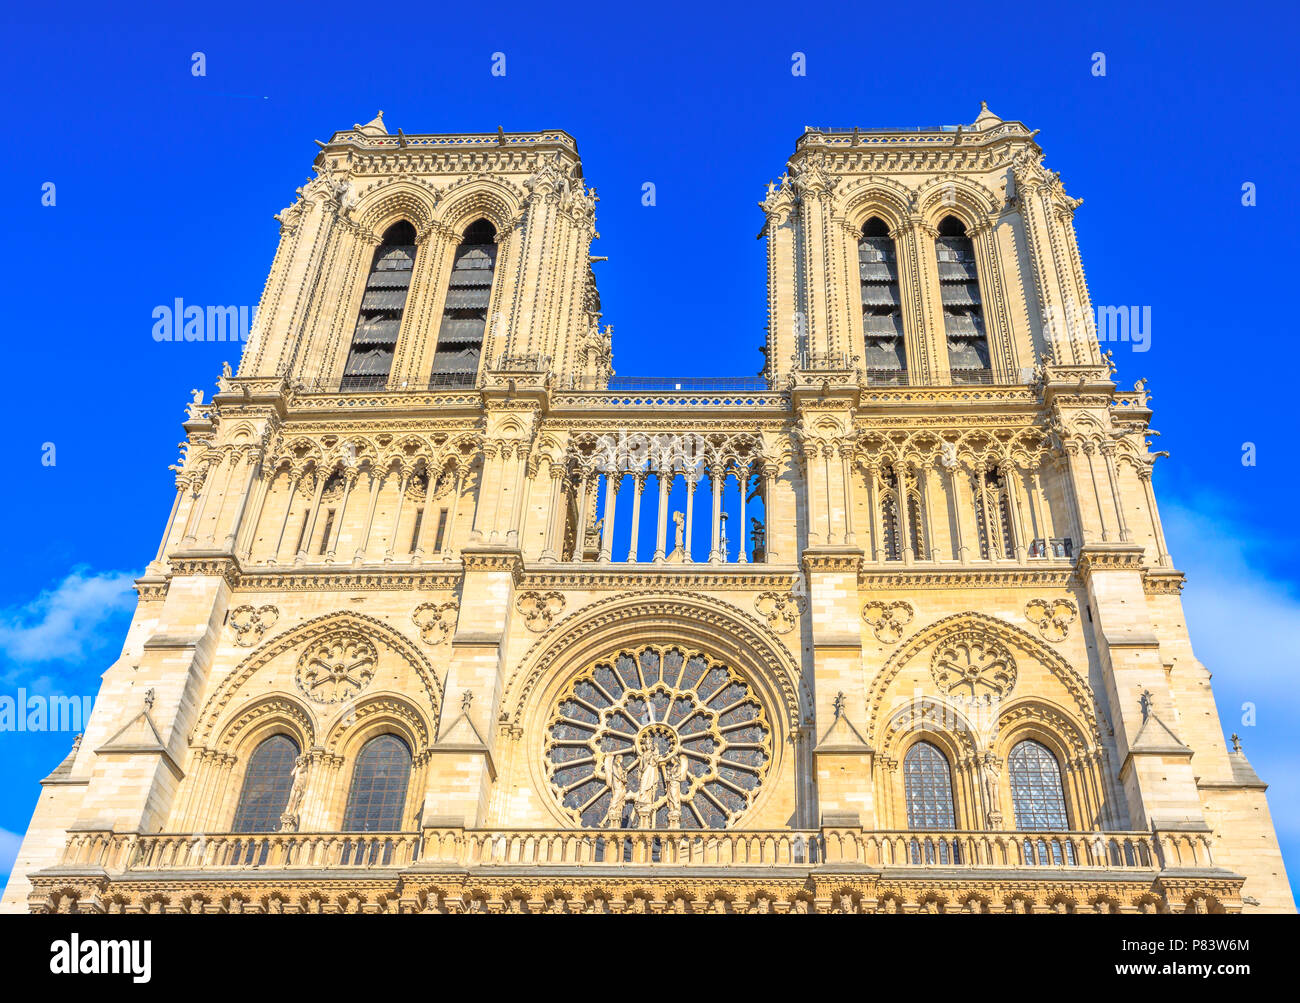 Details der französischen Architektur der Kathedrale Notre Dame von Paris, Frankreich. Schönen, sonnigen Tag in den blauen Himmel. Unsere Liebe Frau von Paris Kirche. Zentrale Hauptfassade mit Türmen und gotischen Rosetten. Stockfoto